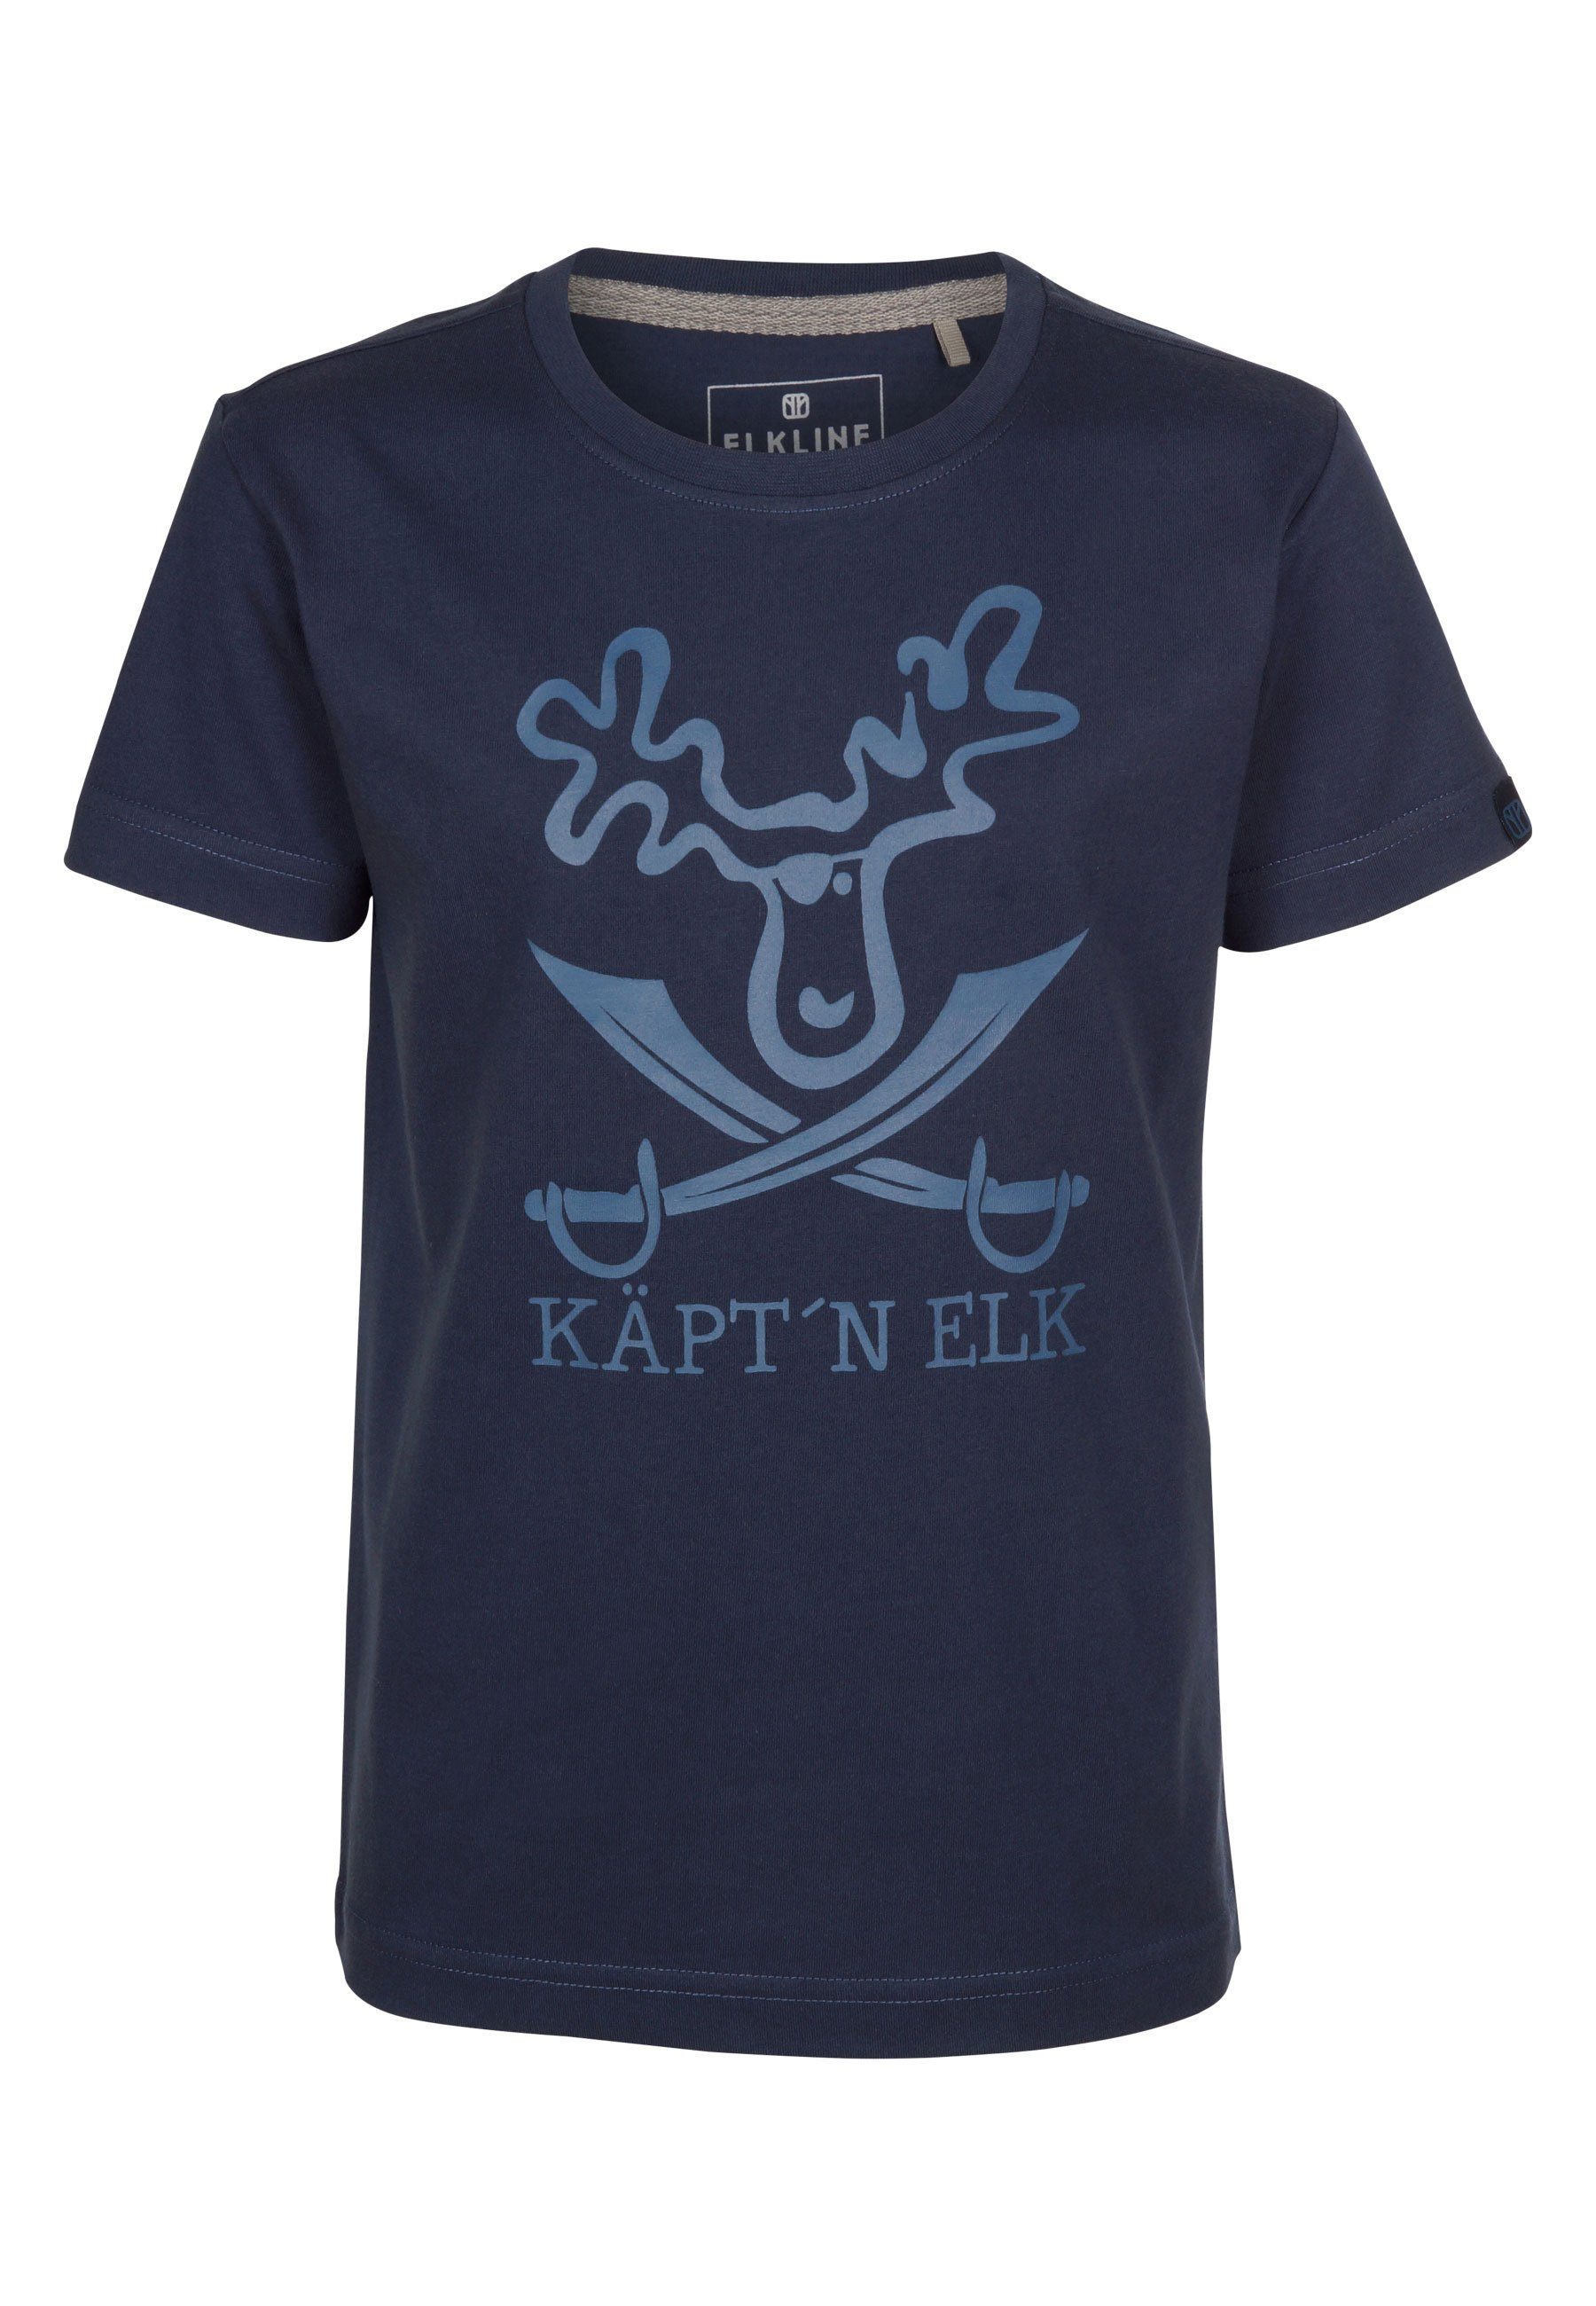 Elkline T-Shirt Schatzinsel Elch Piraten darkblue Brust Print